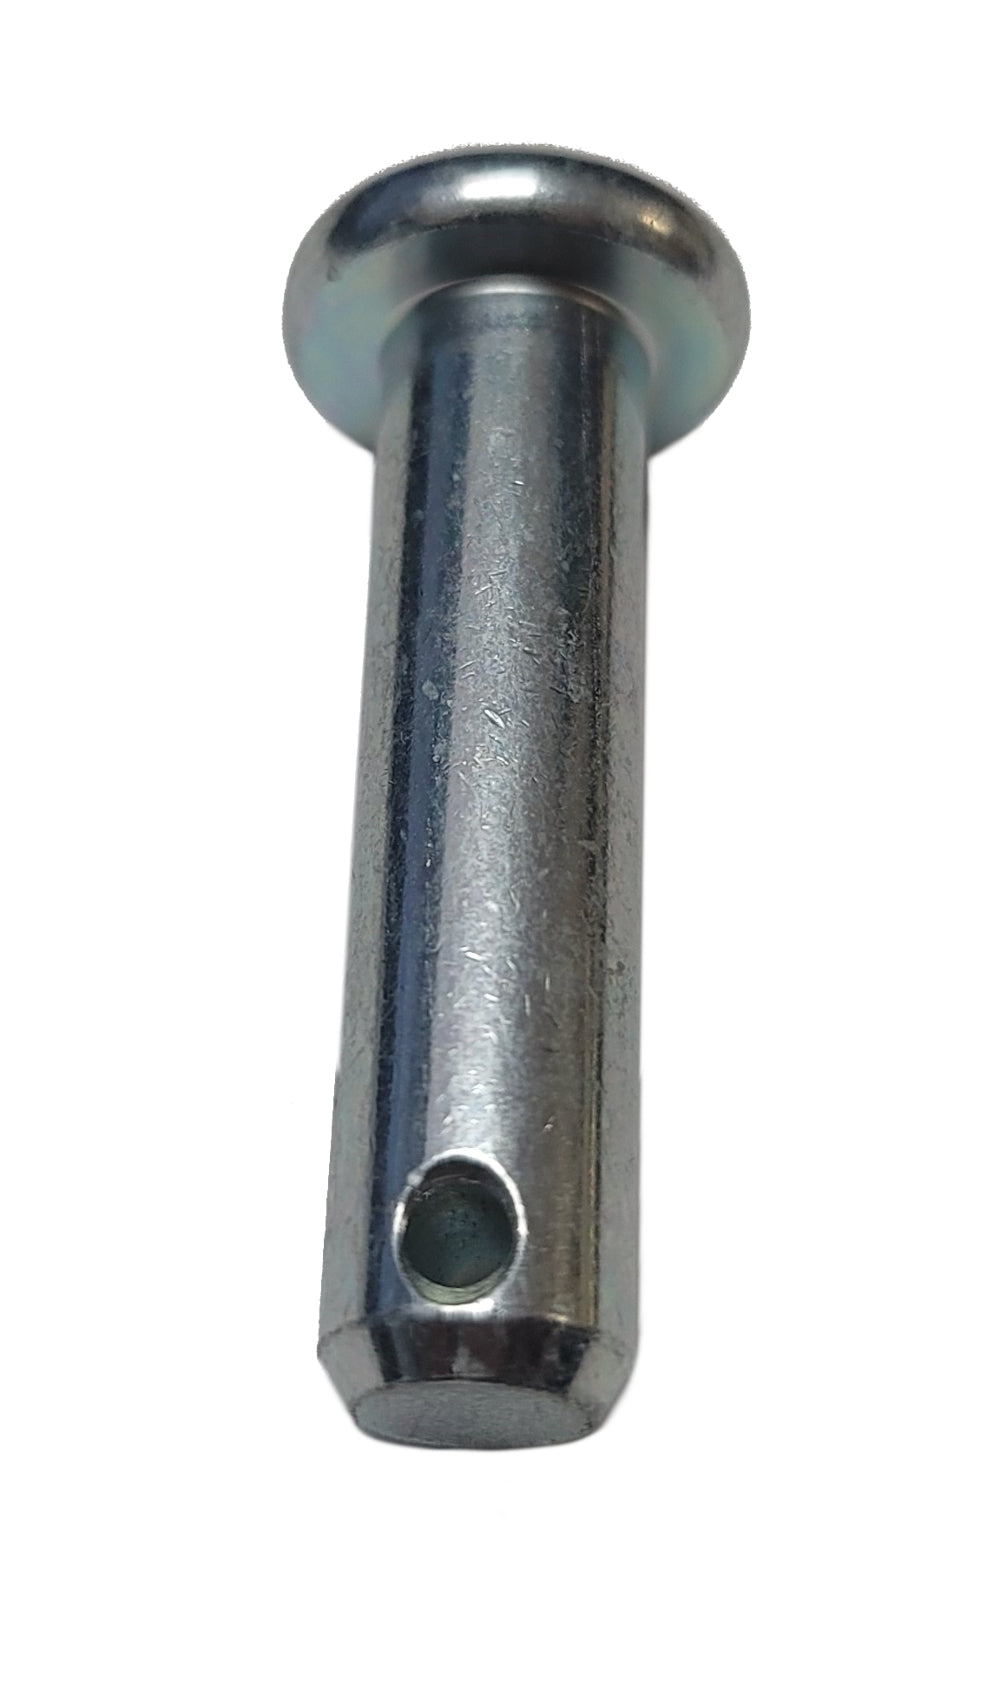 John Deere Original Equipment Pin Fastener #45M7060